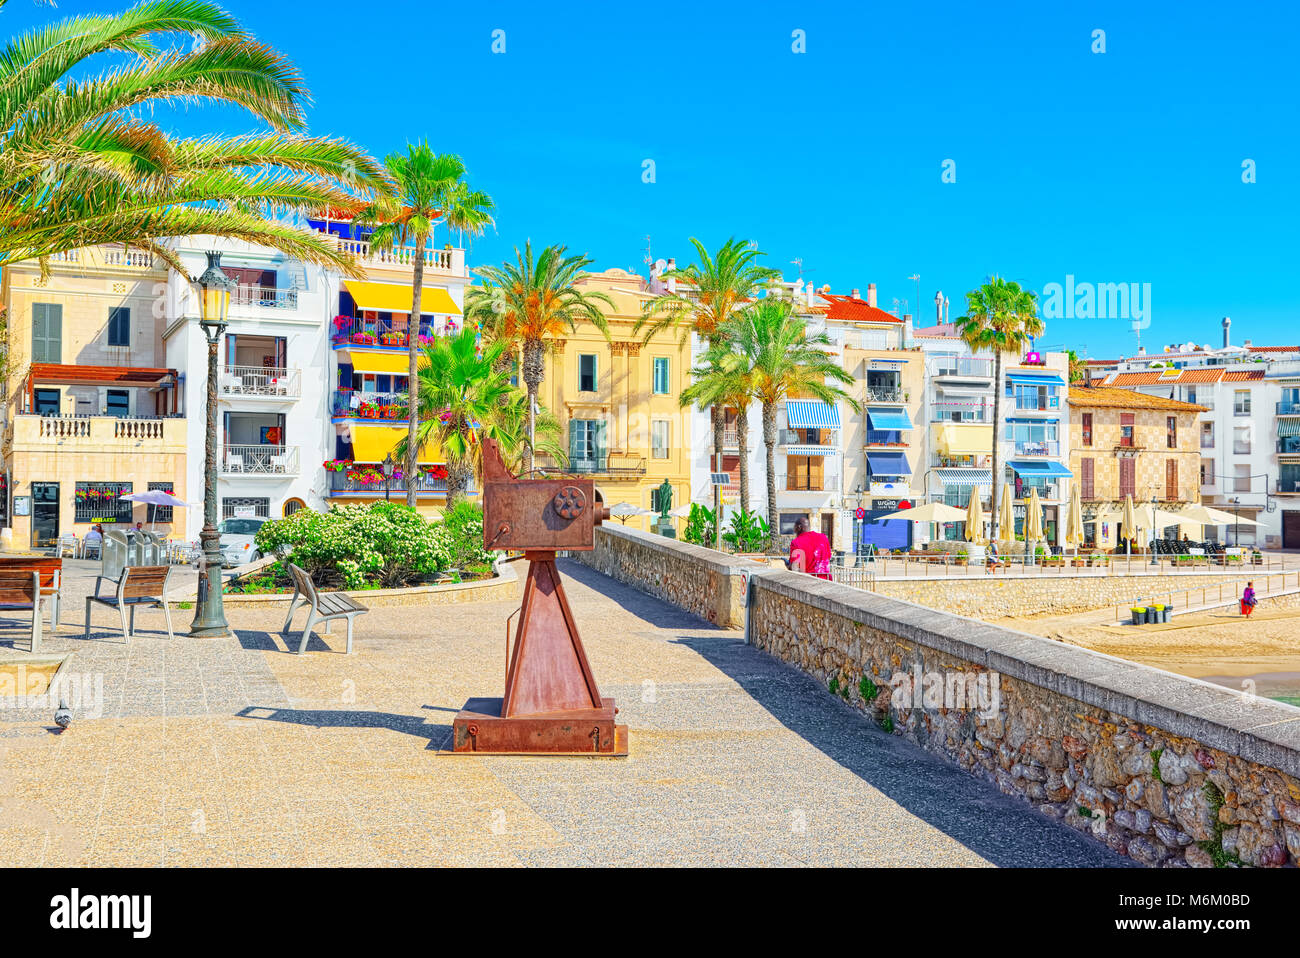 Sitges, Espagne - Juin 14, 2017 : vue sur le remblai et la promenade dans la petite station balnéaire de Sitges, en banlieue de Barcelone.L'Espagne. Banque D'Images